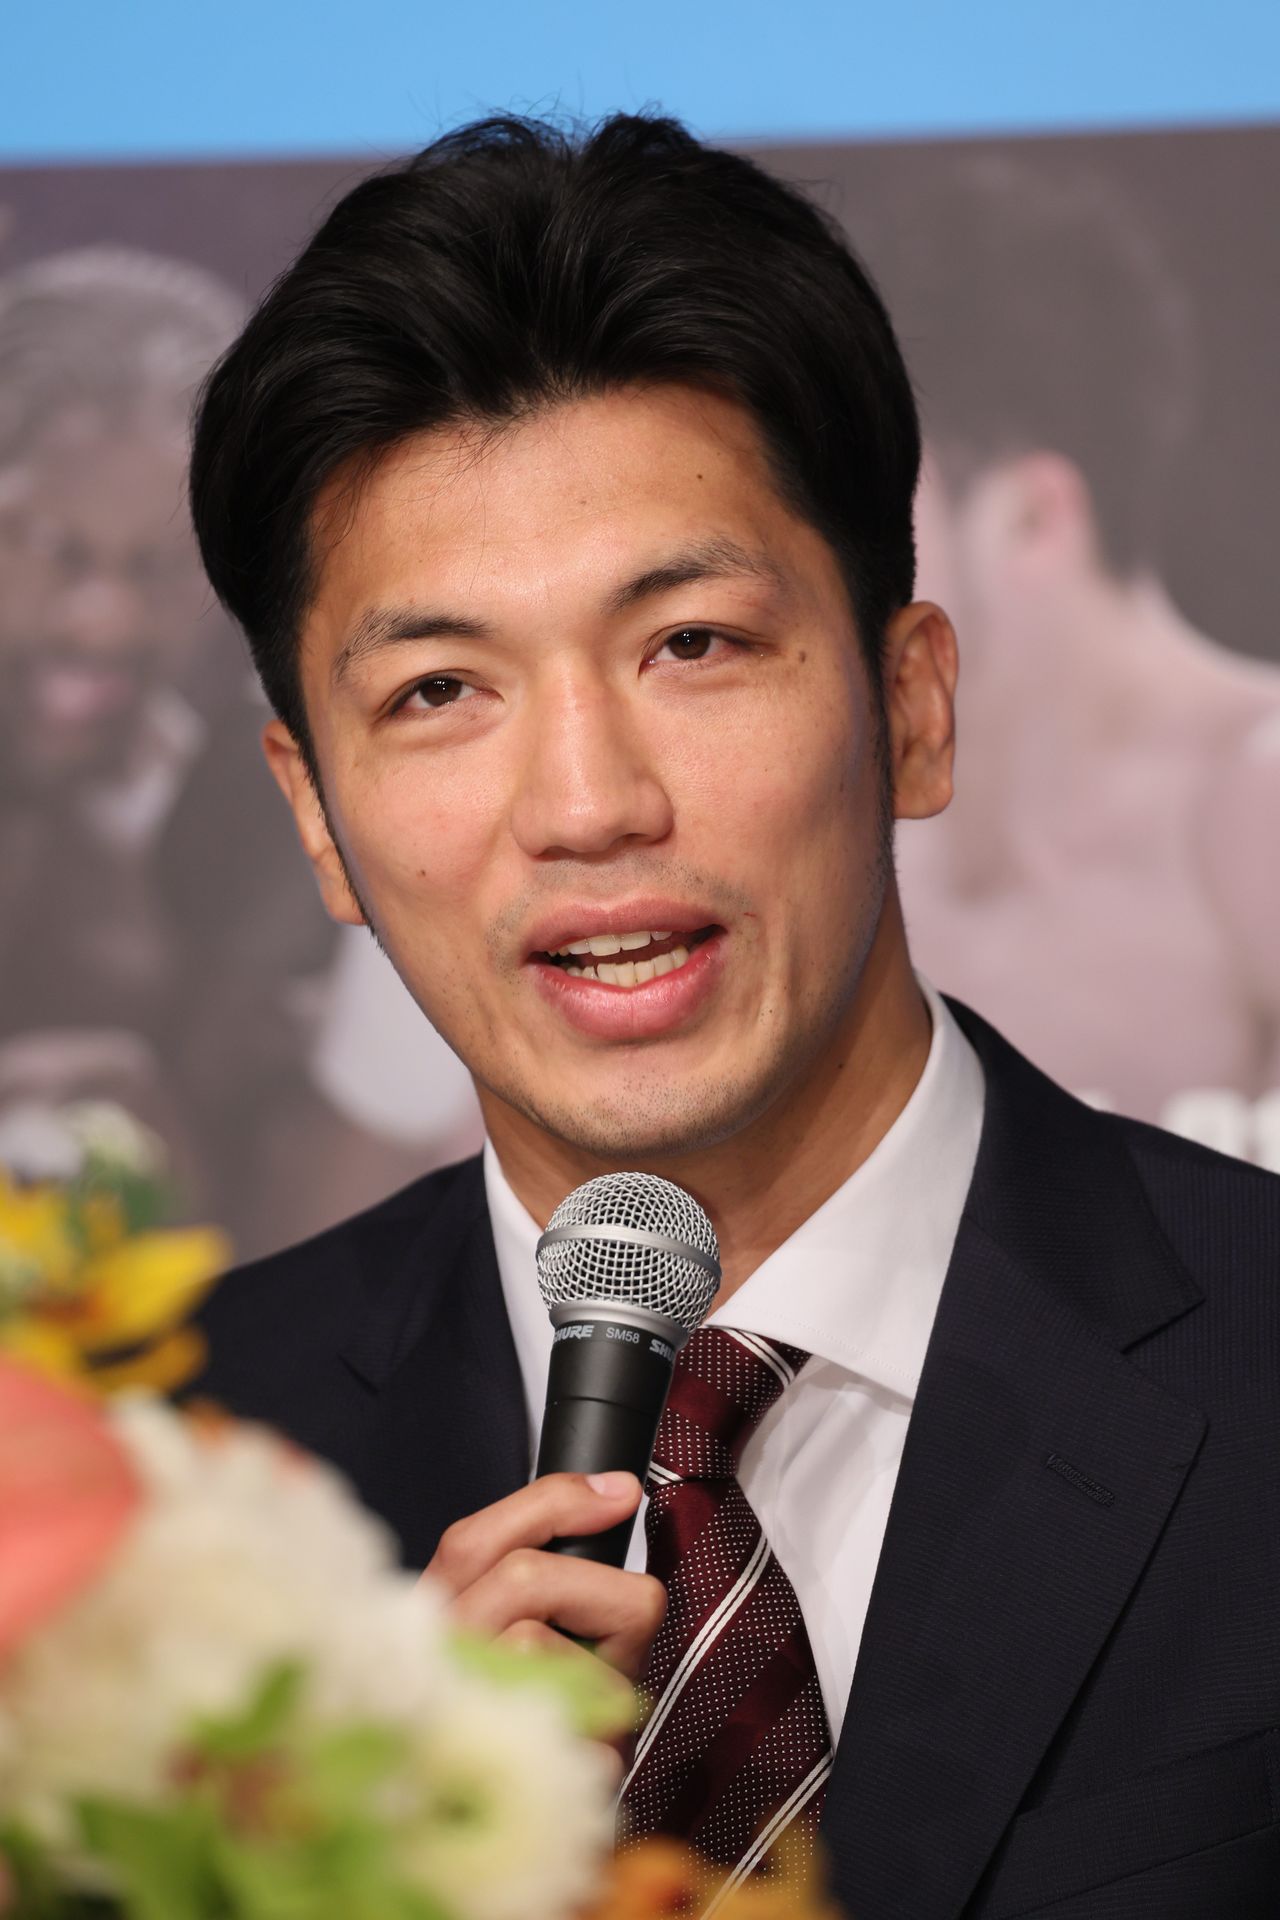 Бывший чемпион мира по боксу Мурата Рёта объявляет о завершении спортивной карьеры на пресс-конференции (© Jiji Press)